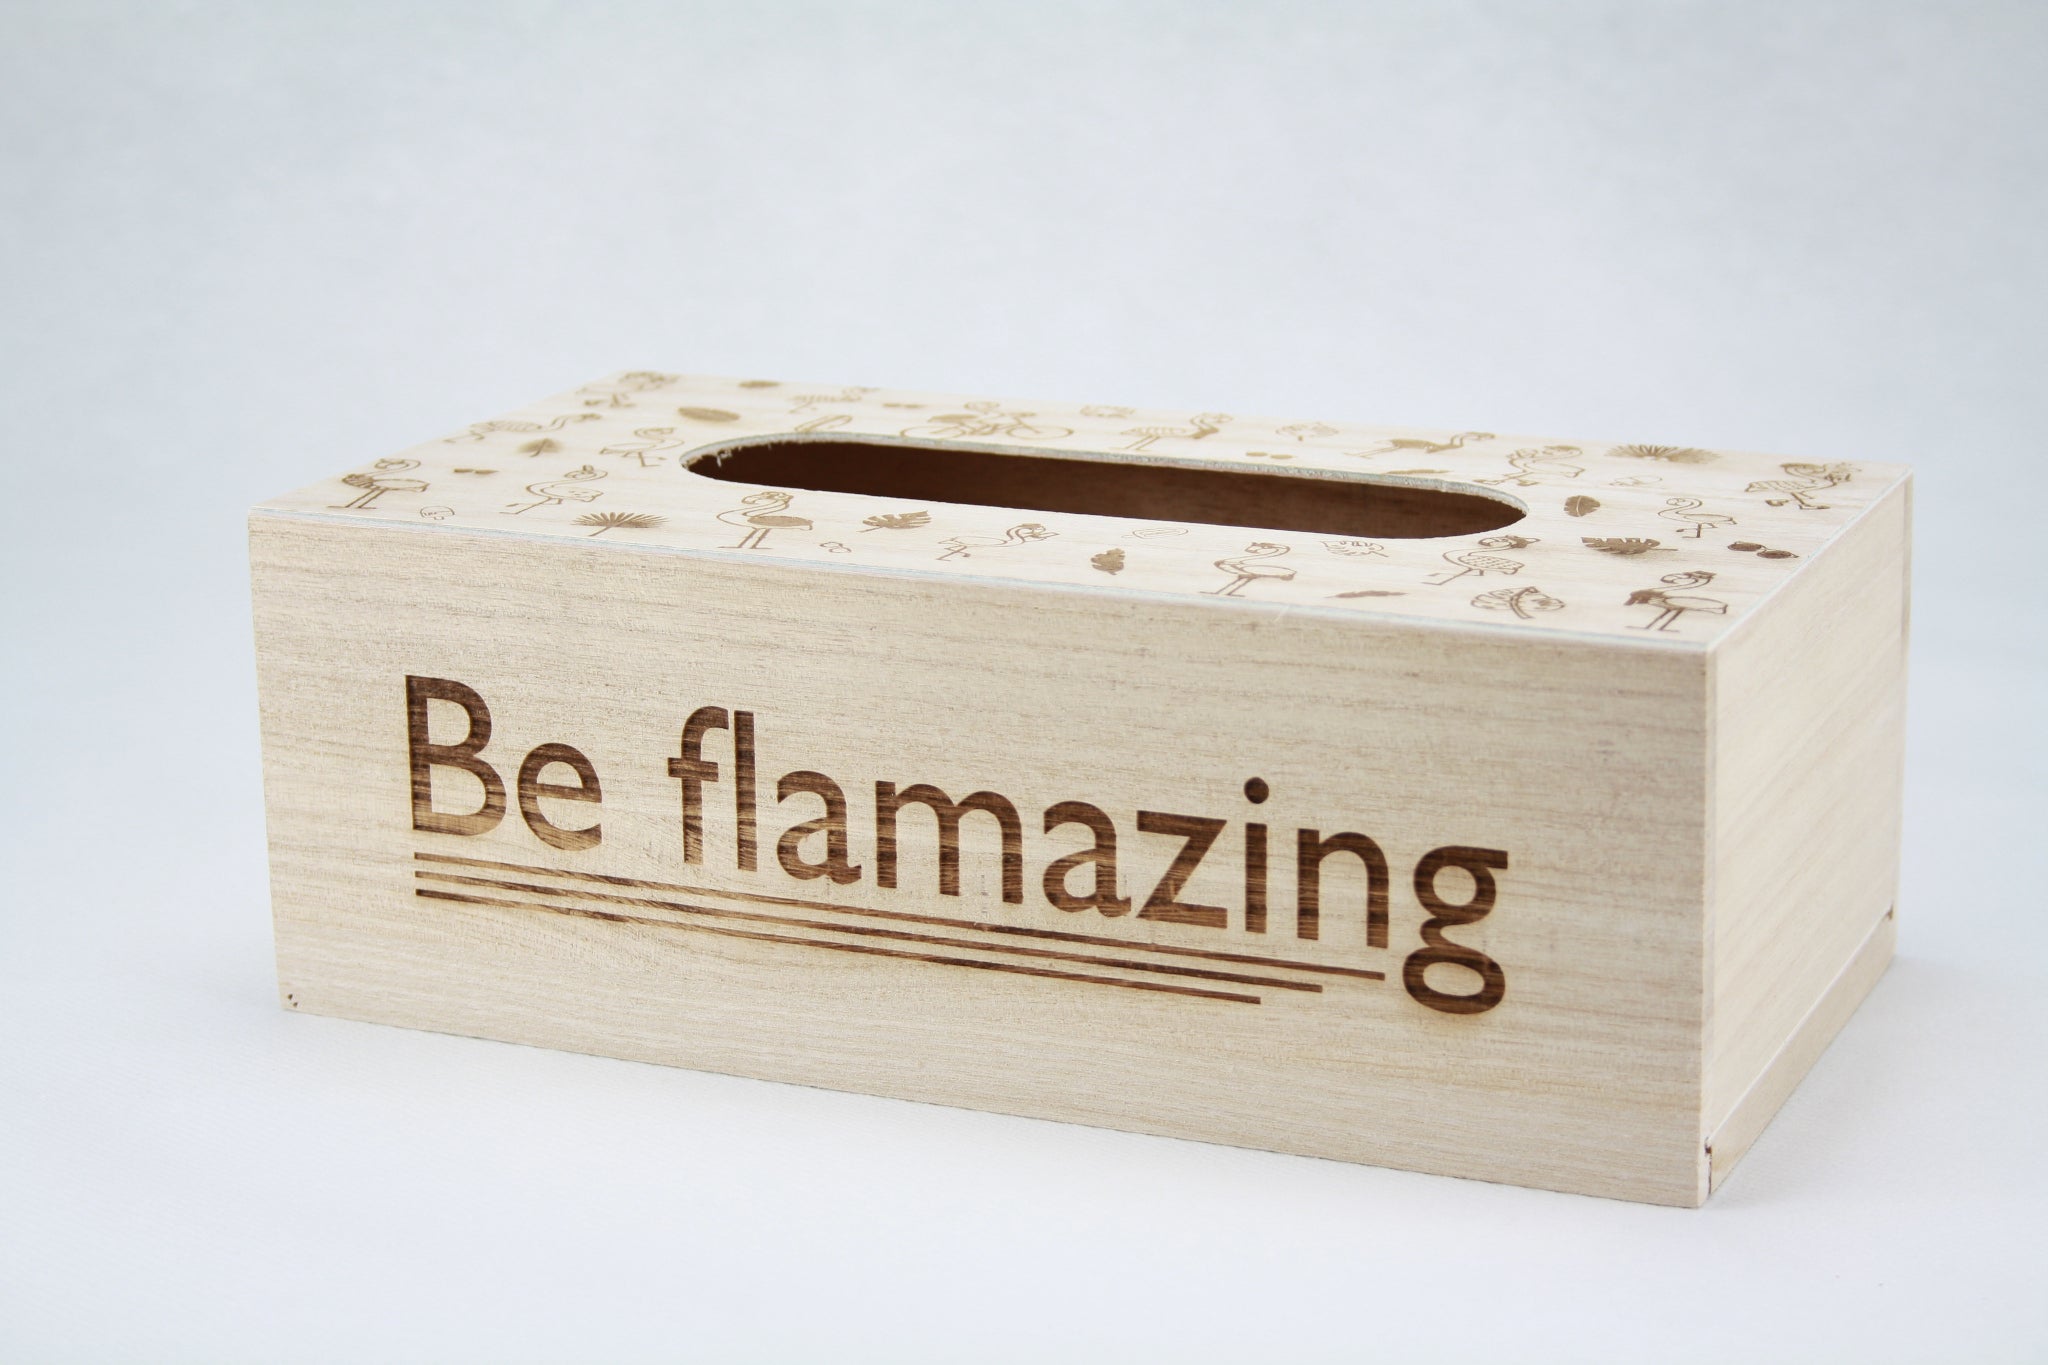 Een houten zakdoekdoos met een gegraveerde afbeeldingen van flamingo's erop. Gravure tekst 'Be flamazing'.